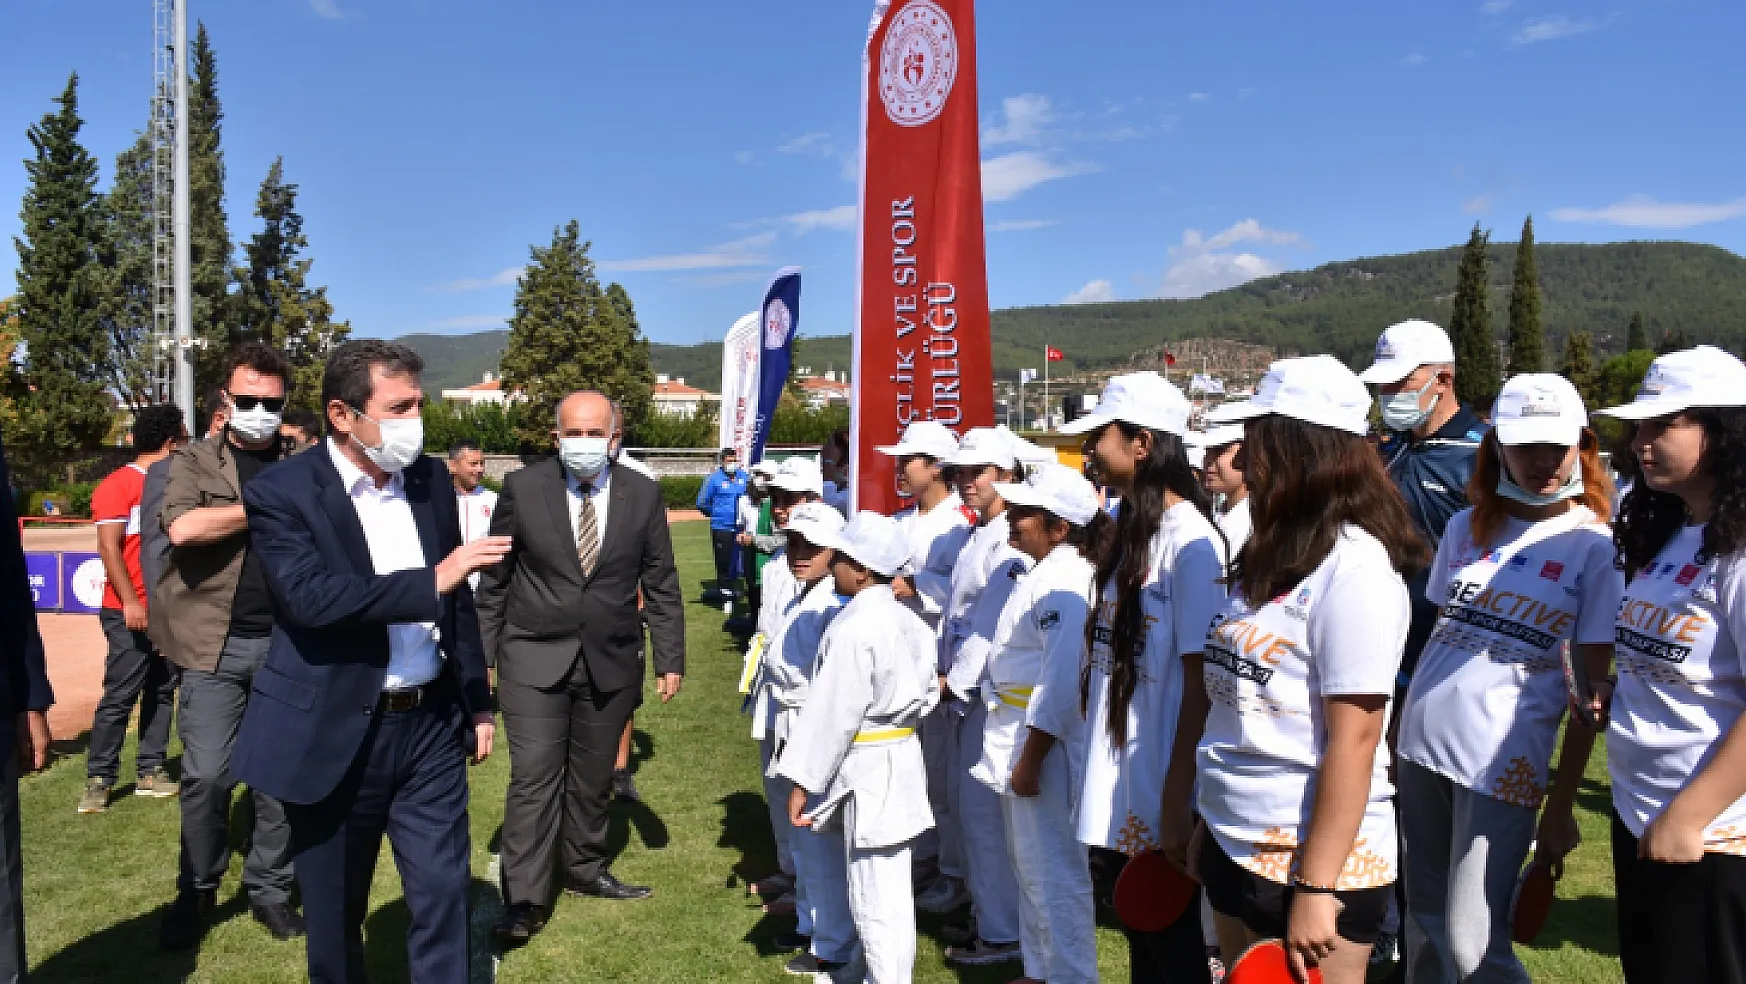 Muğla'da Avrupa Spor Haftası kapsamında 'Ulusal Herkes İçin Spor ve Sağlık Günleri' etkinlikleri açılış töreniyle başladı